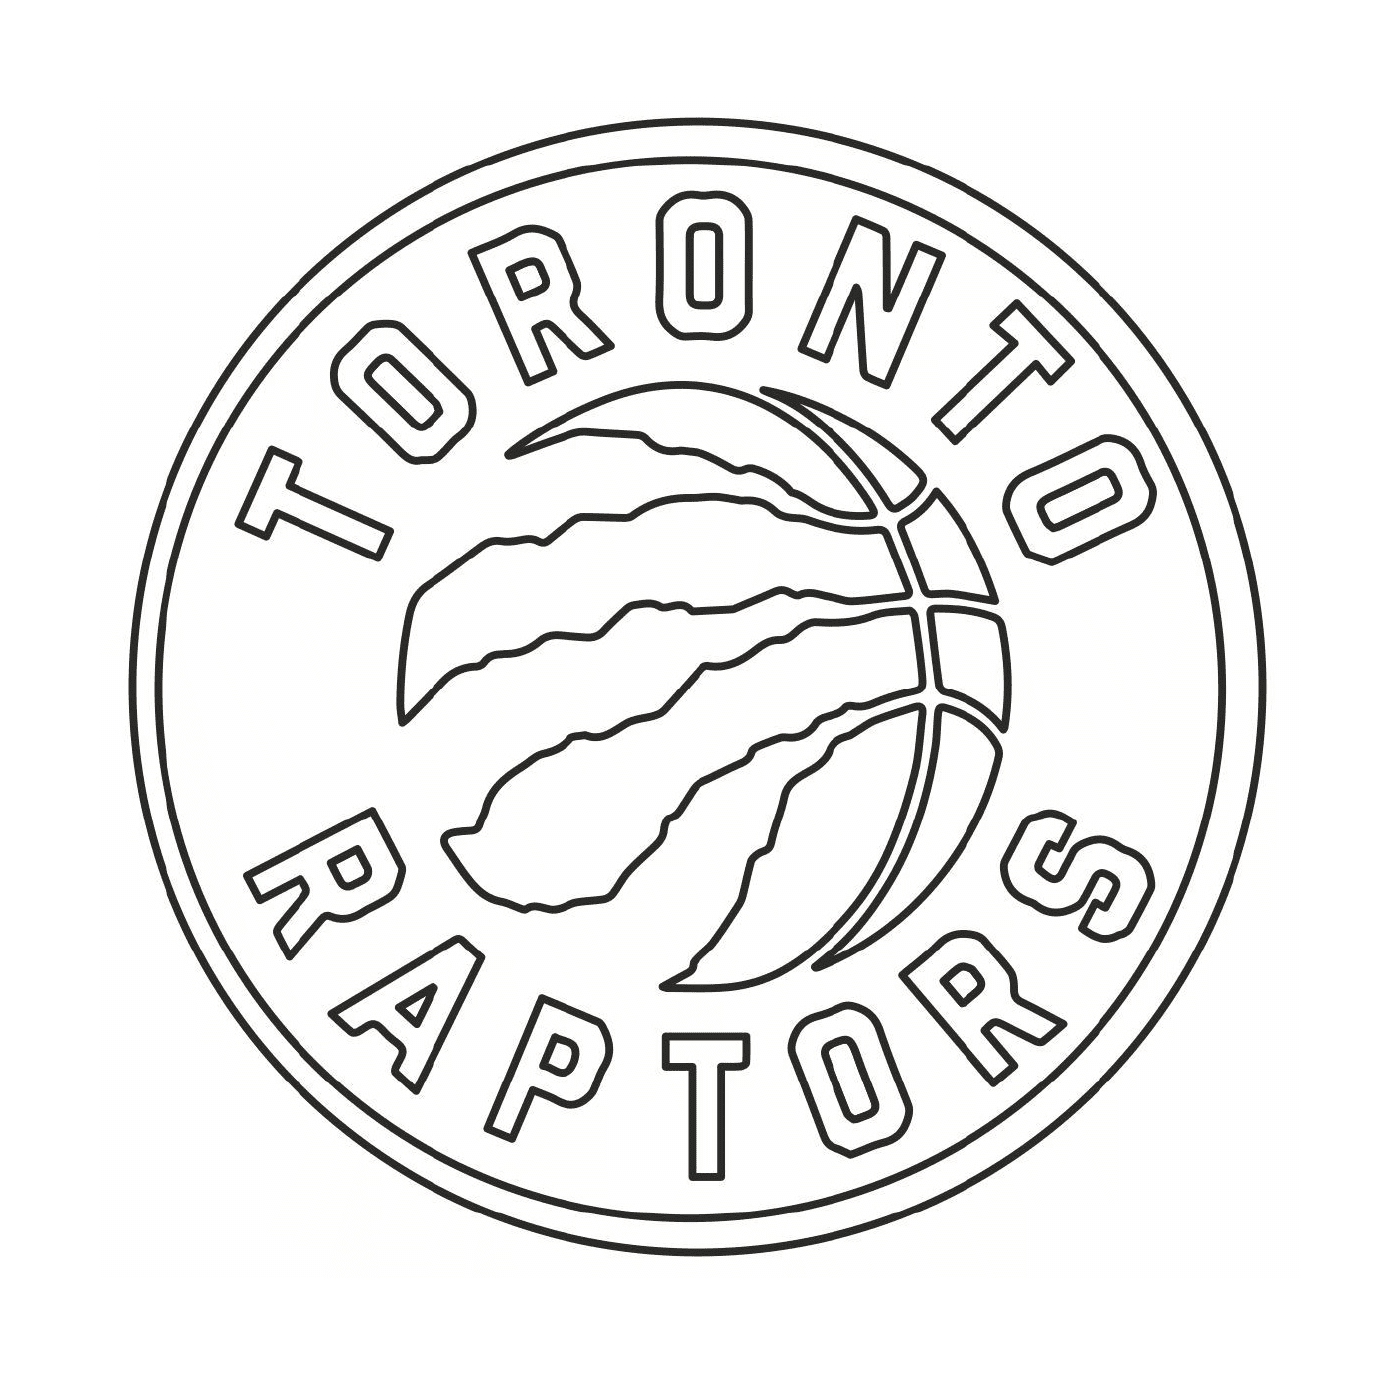  O logotipo do Toronto Raptors, time de basquete 